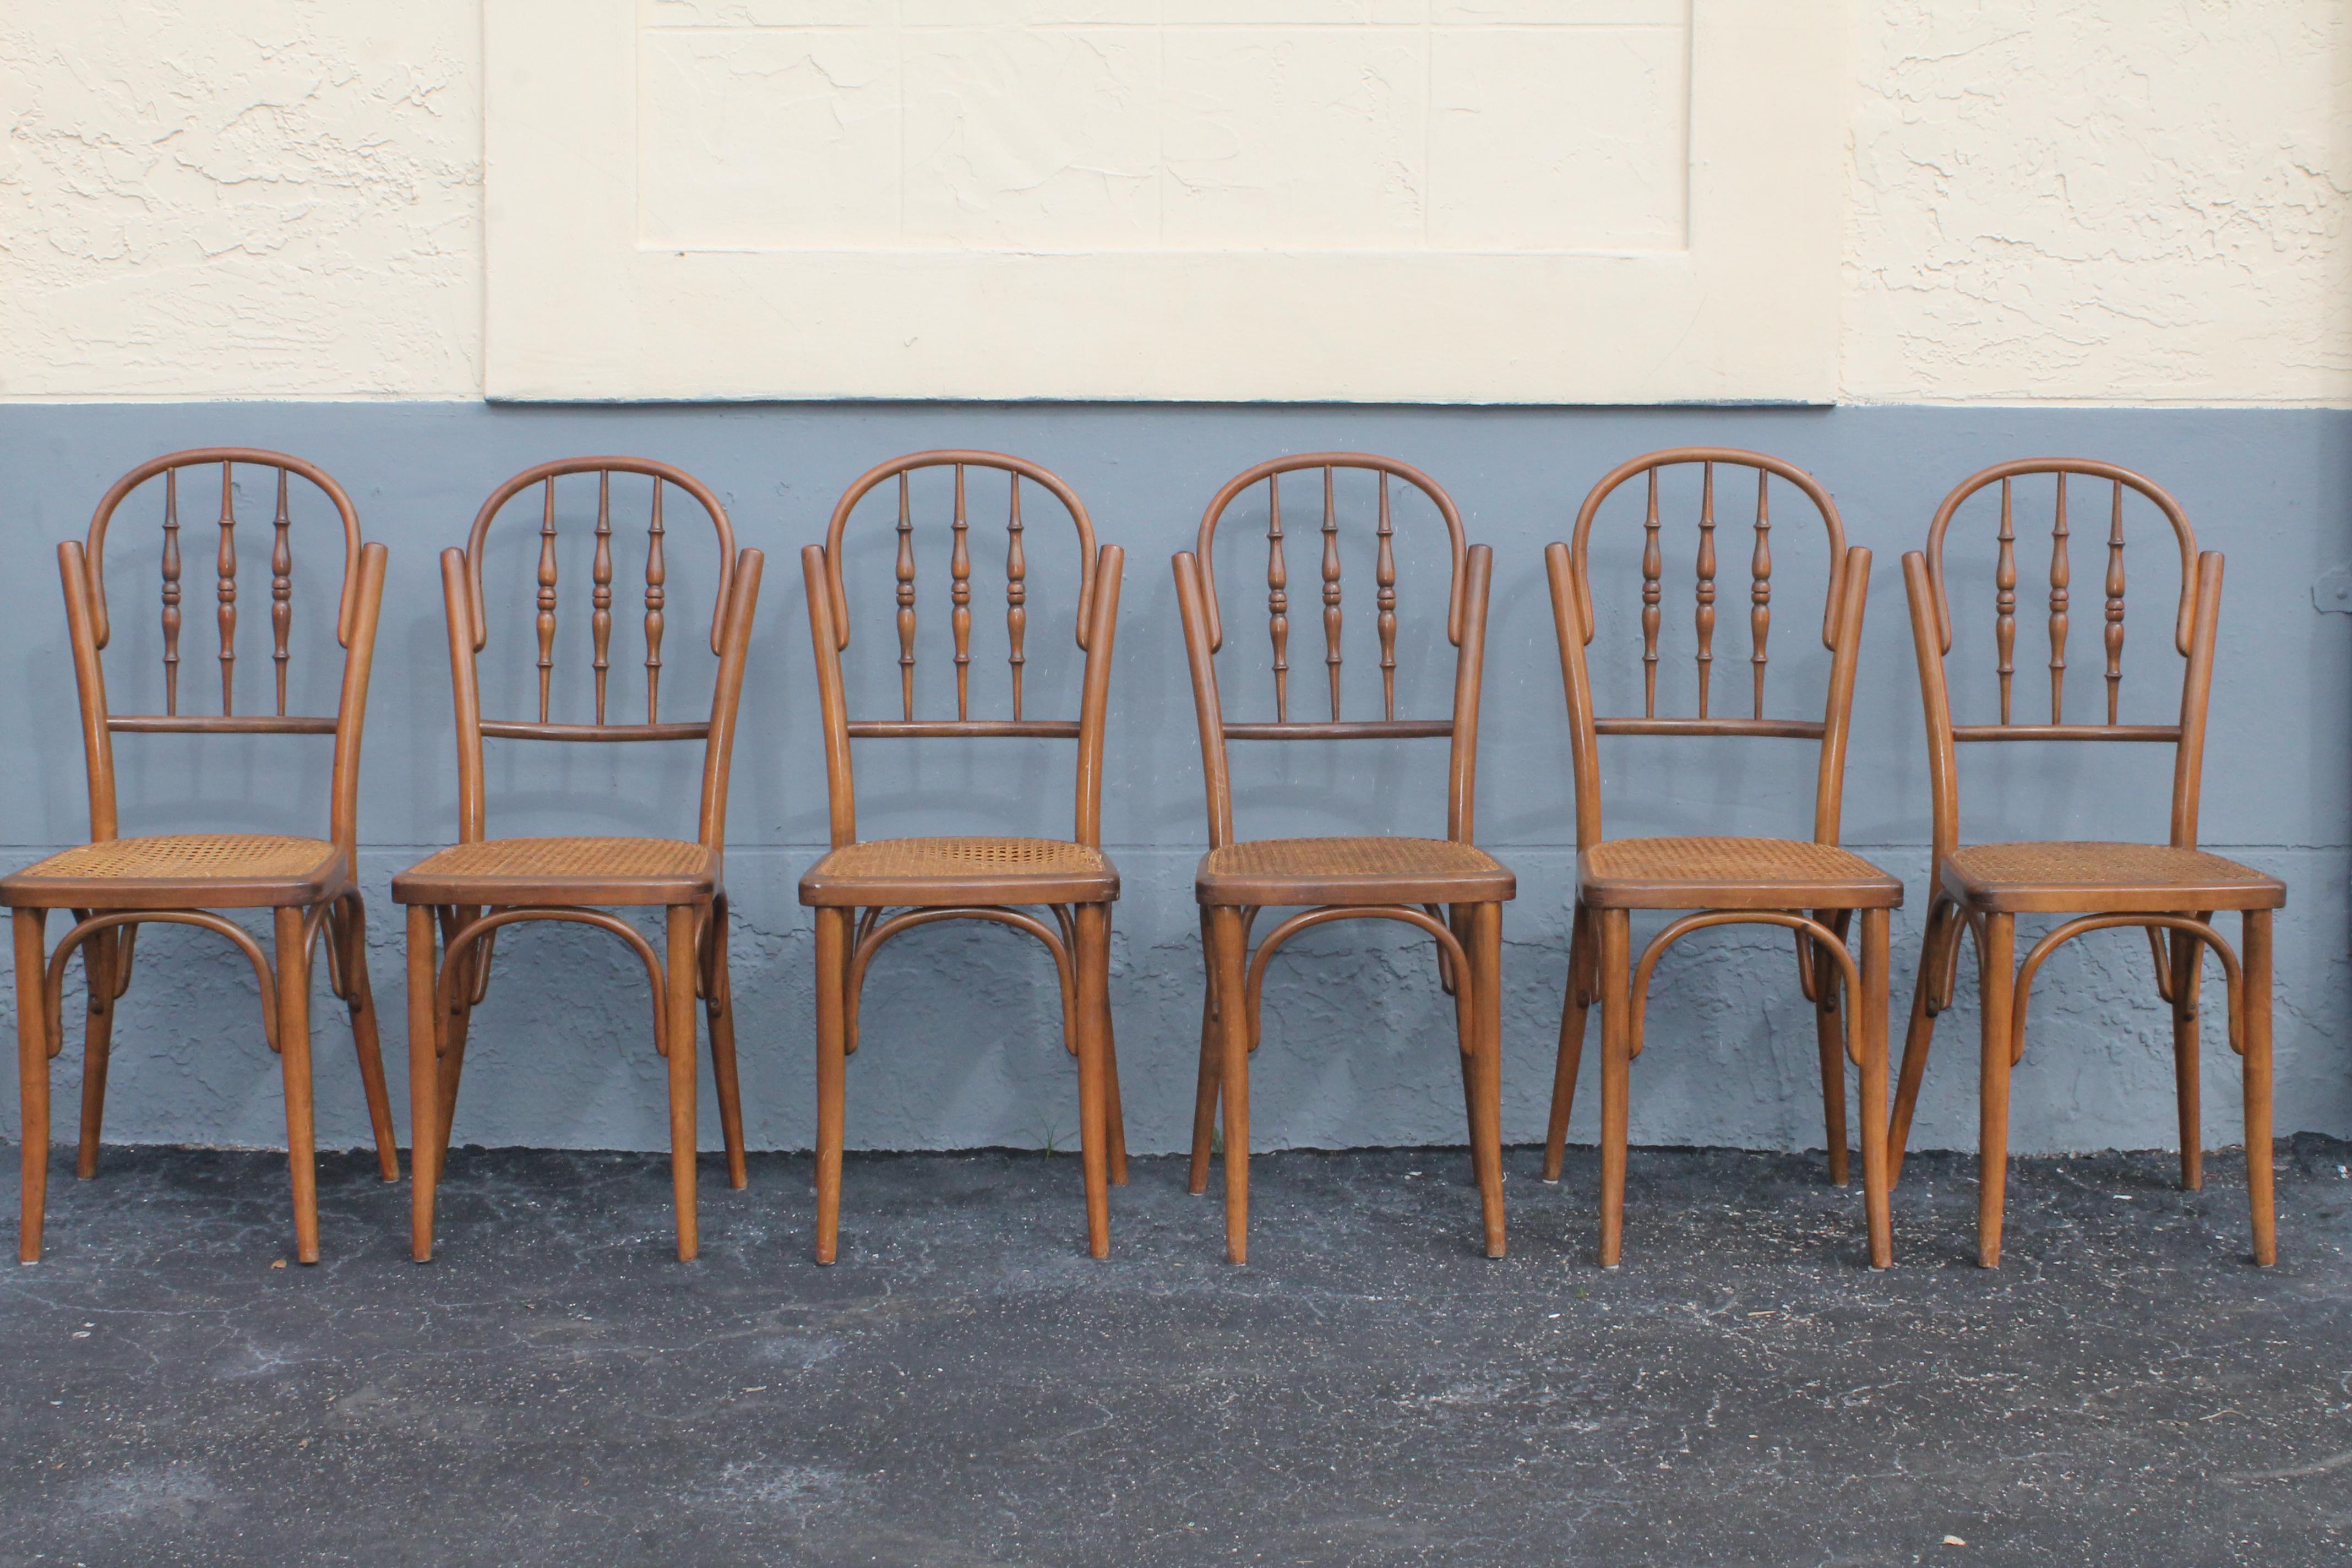 Ensemble de 6 chaises de salle à manger cannées de style campagnard français, vers 1940. Les sièges sont cannés. Condit en bon état.